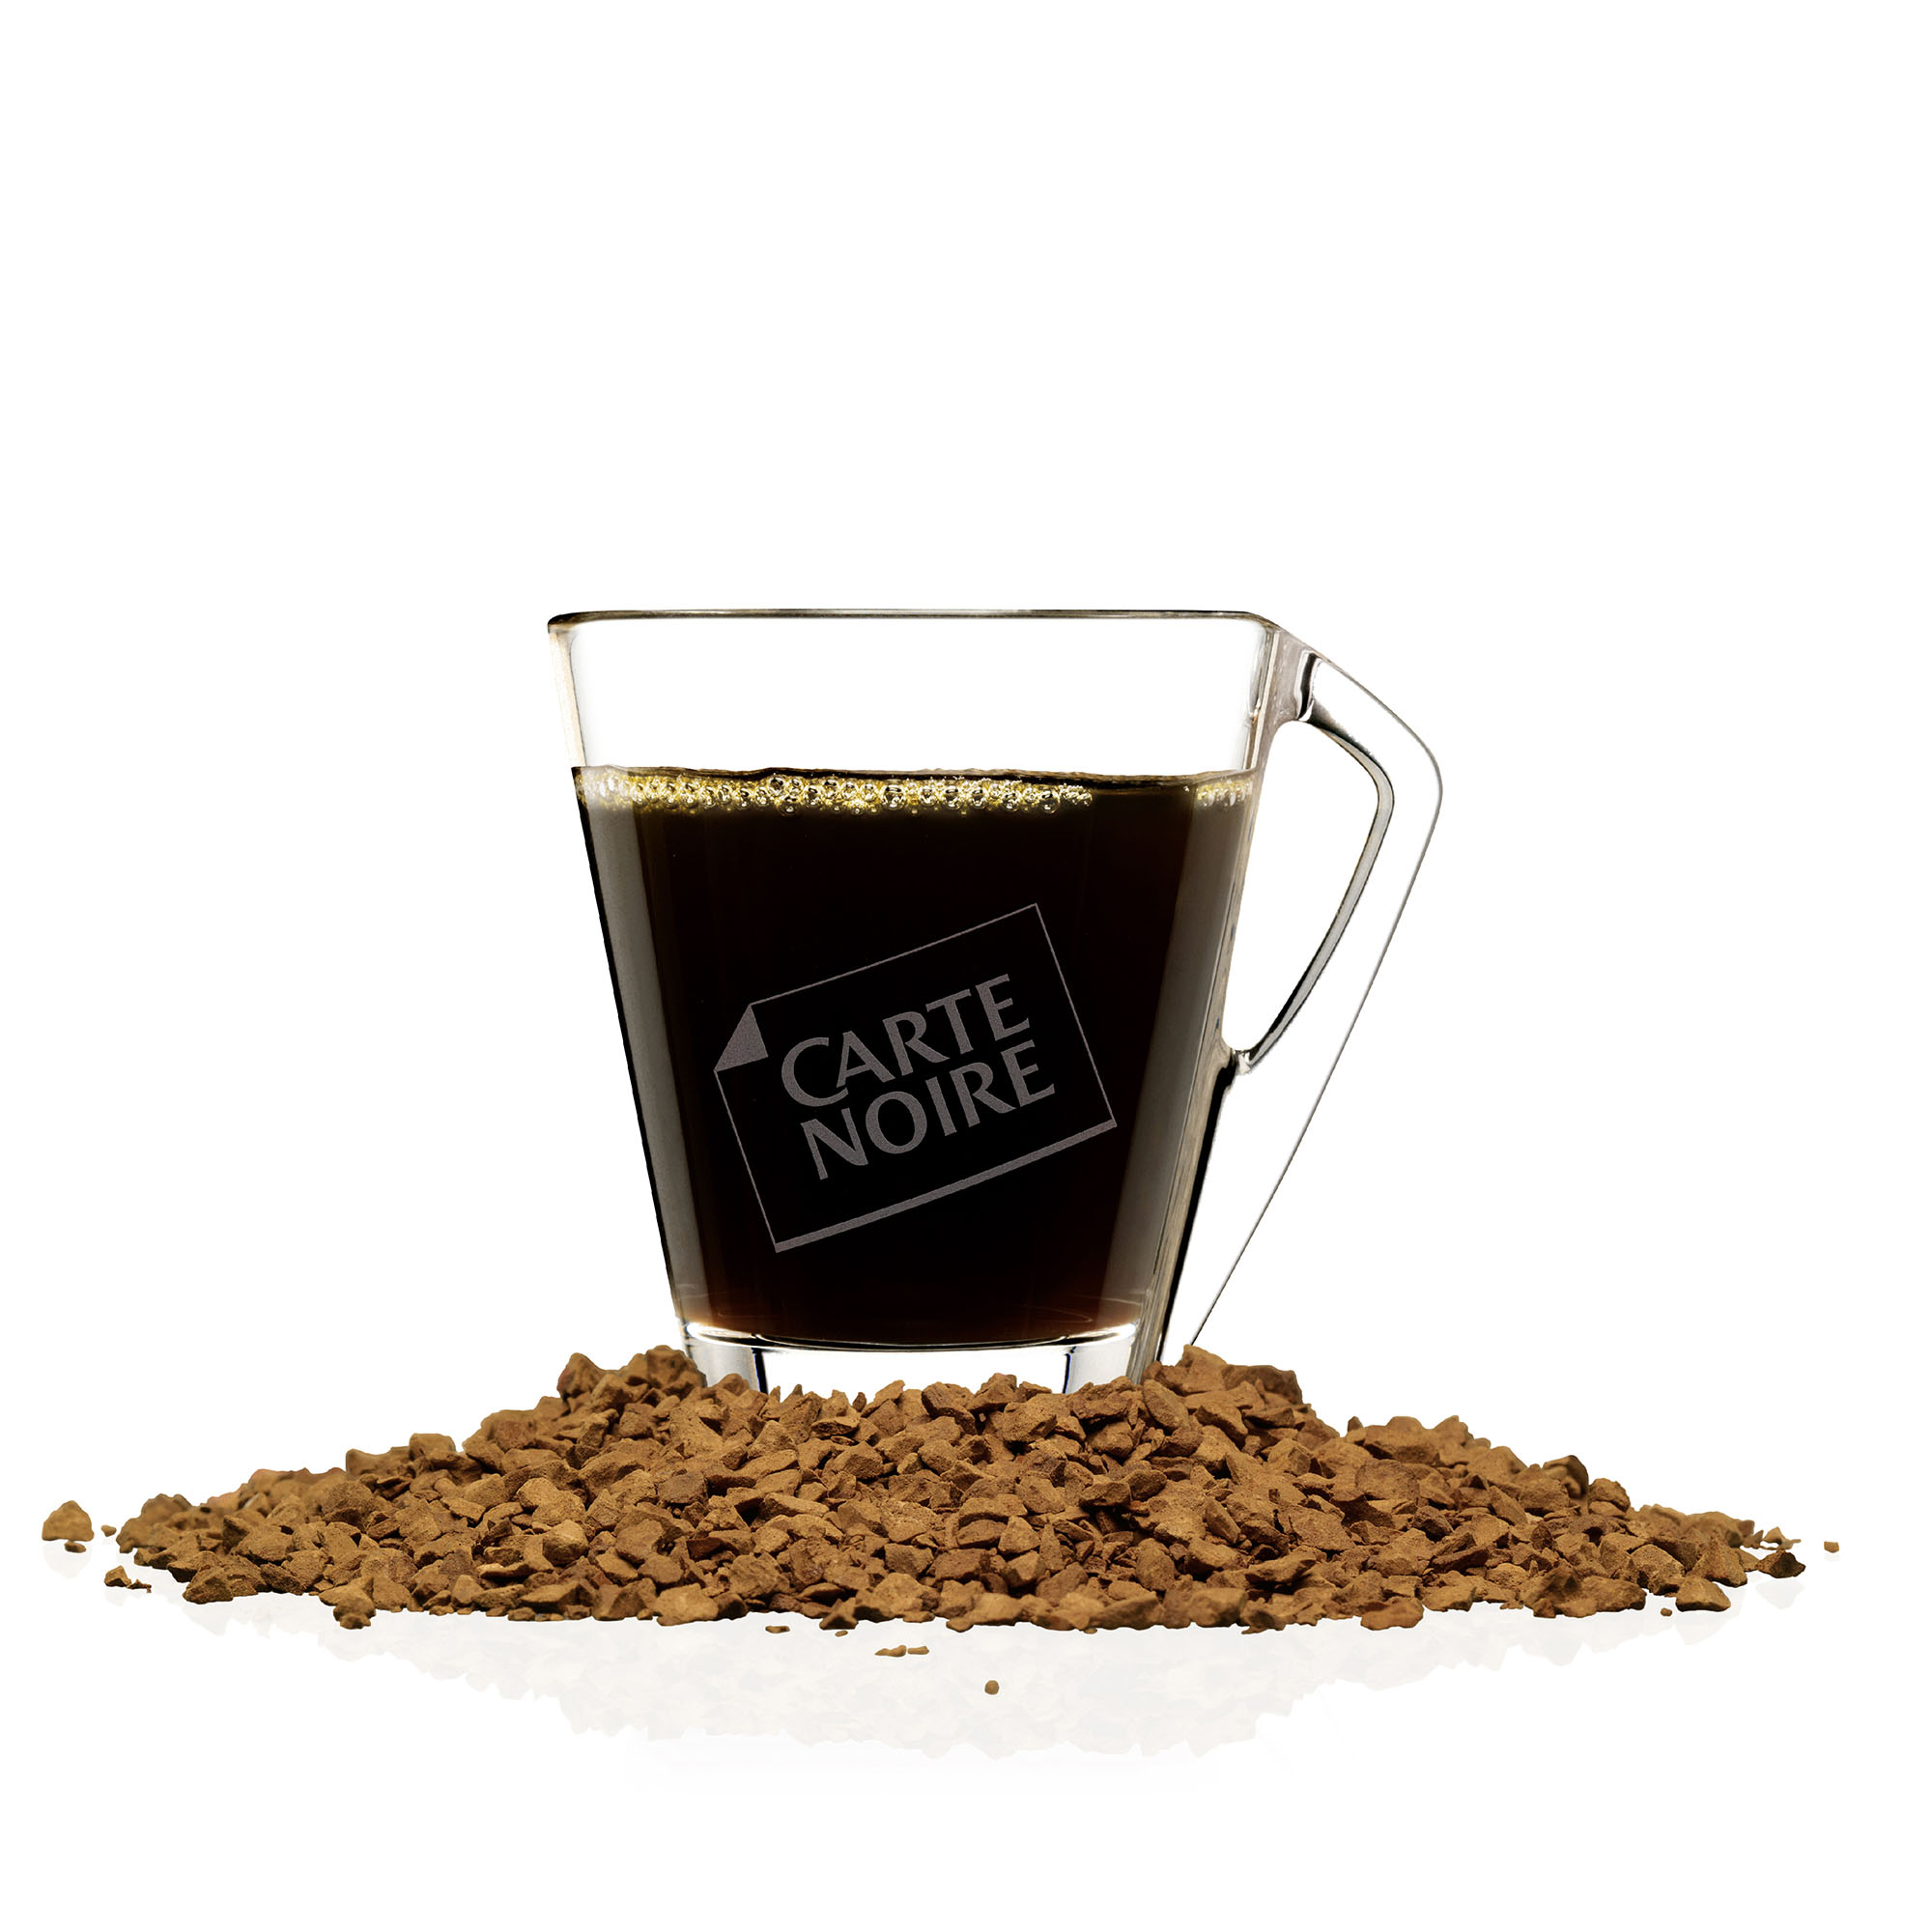 Café soluble Carte noire Classique 100 % Arabica - Recharge de 180